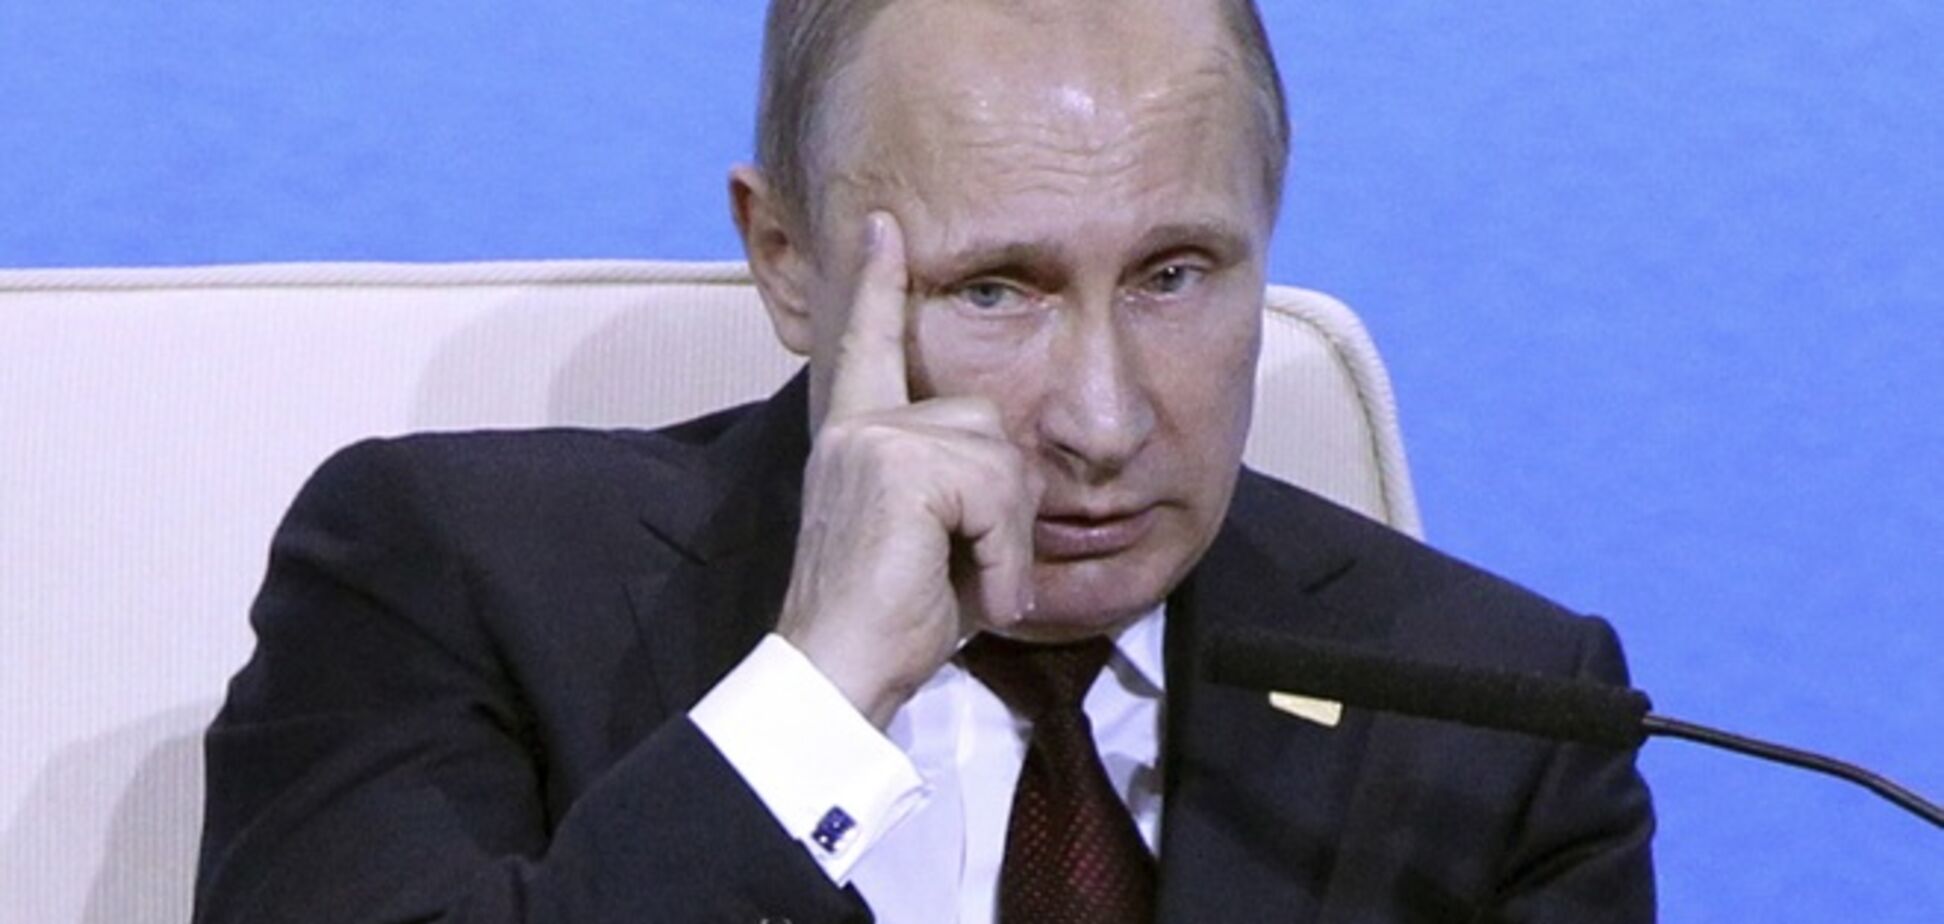 США и Европа обсуждают новые санкции против России, Путин готовится к изоляции - The Wall Street Journal